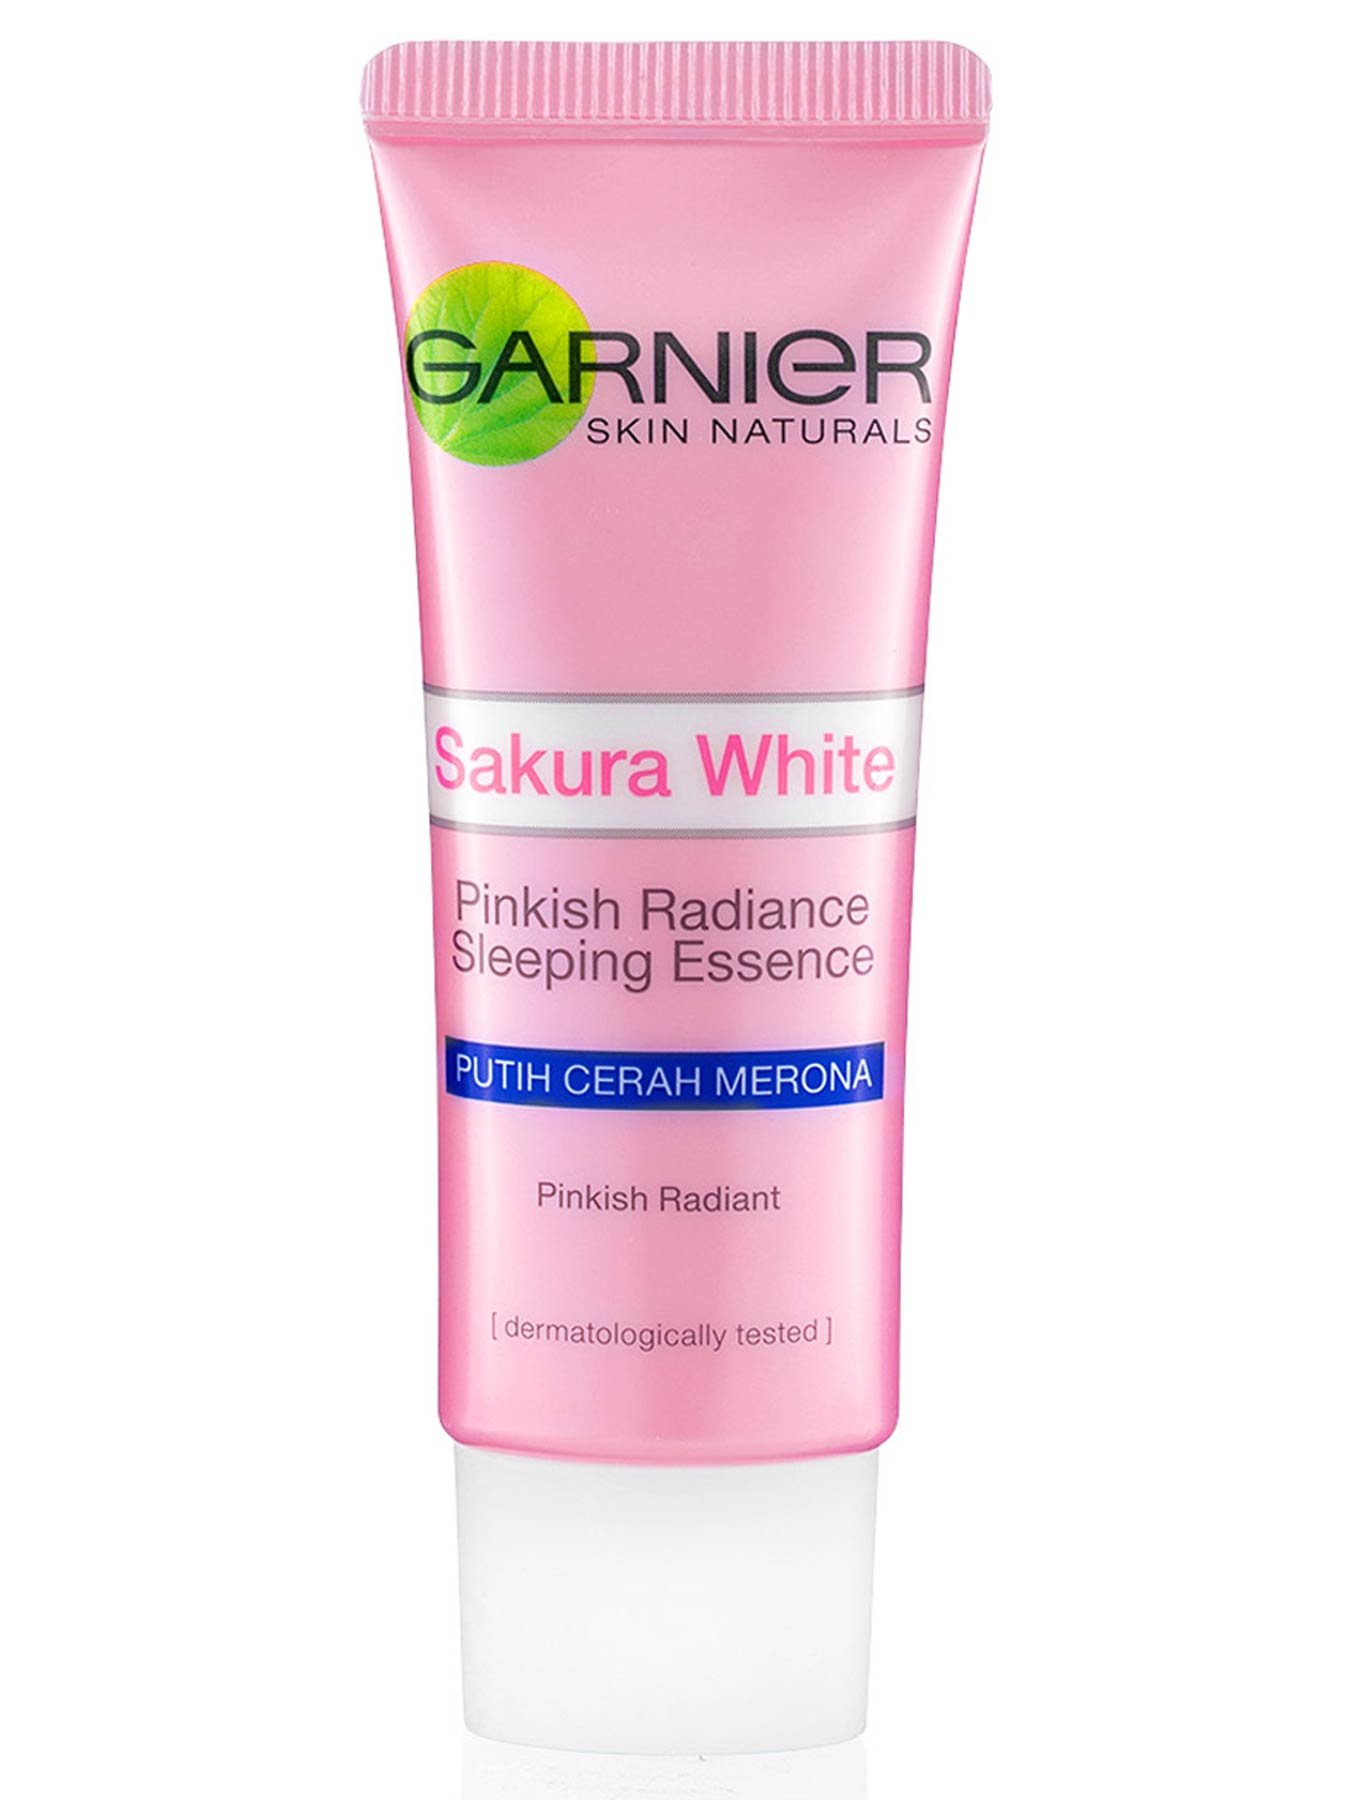 Sakura White Night Cream 20ml Krim Malam Garnier